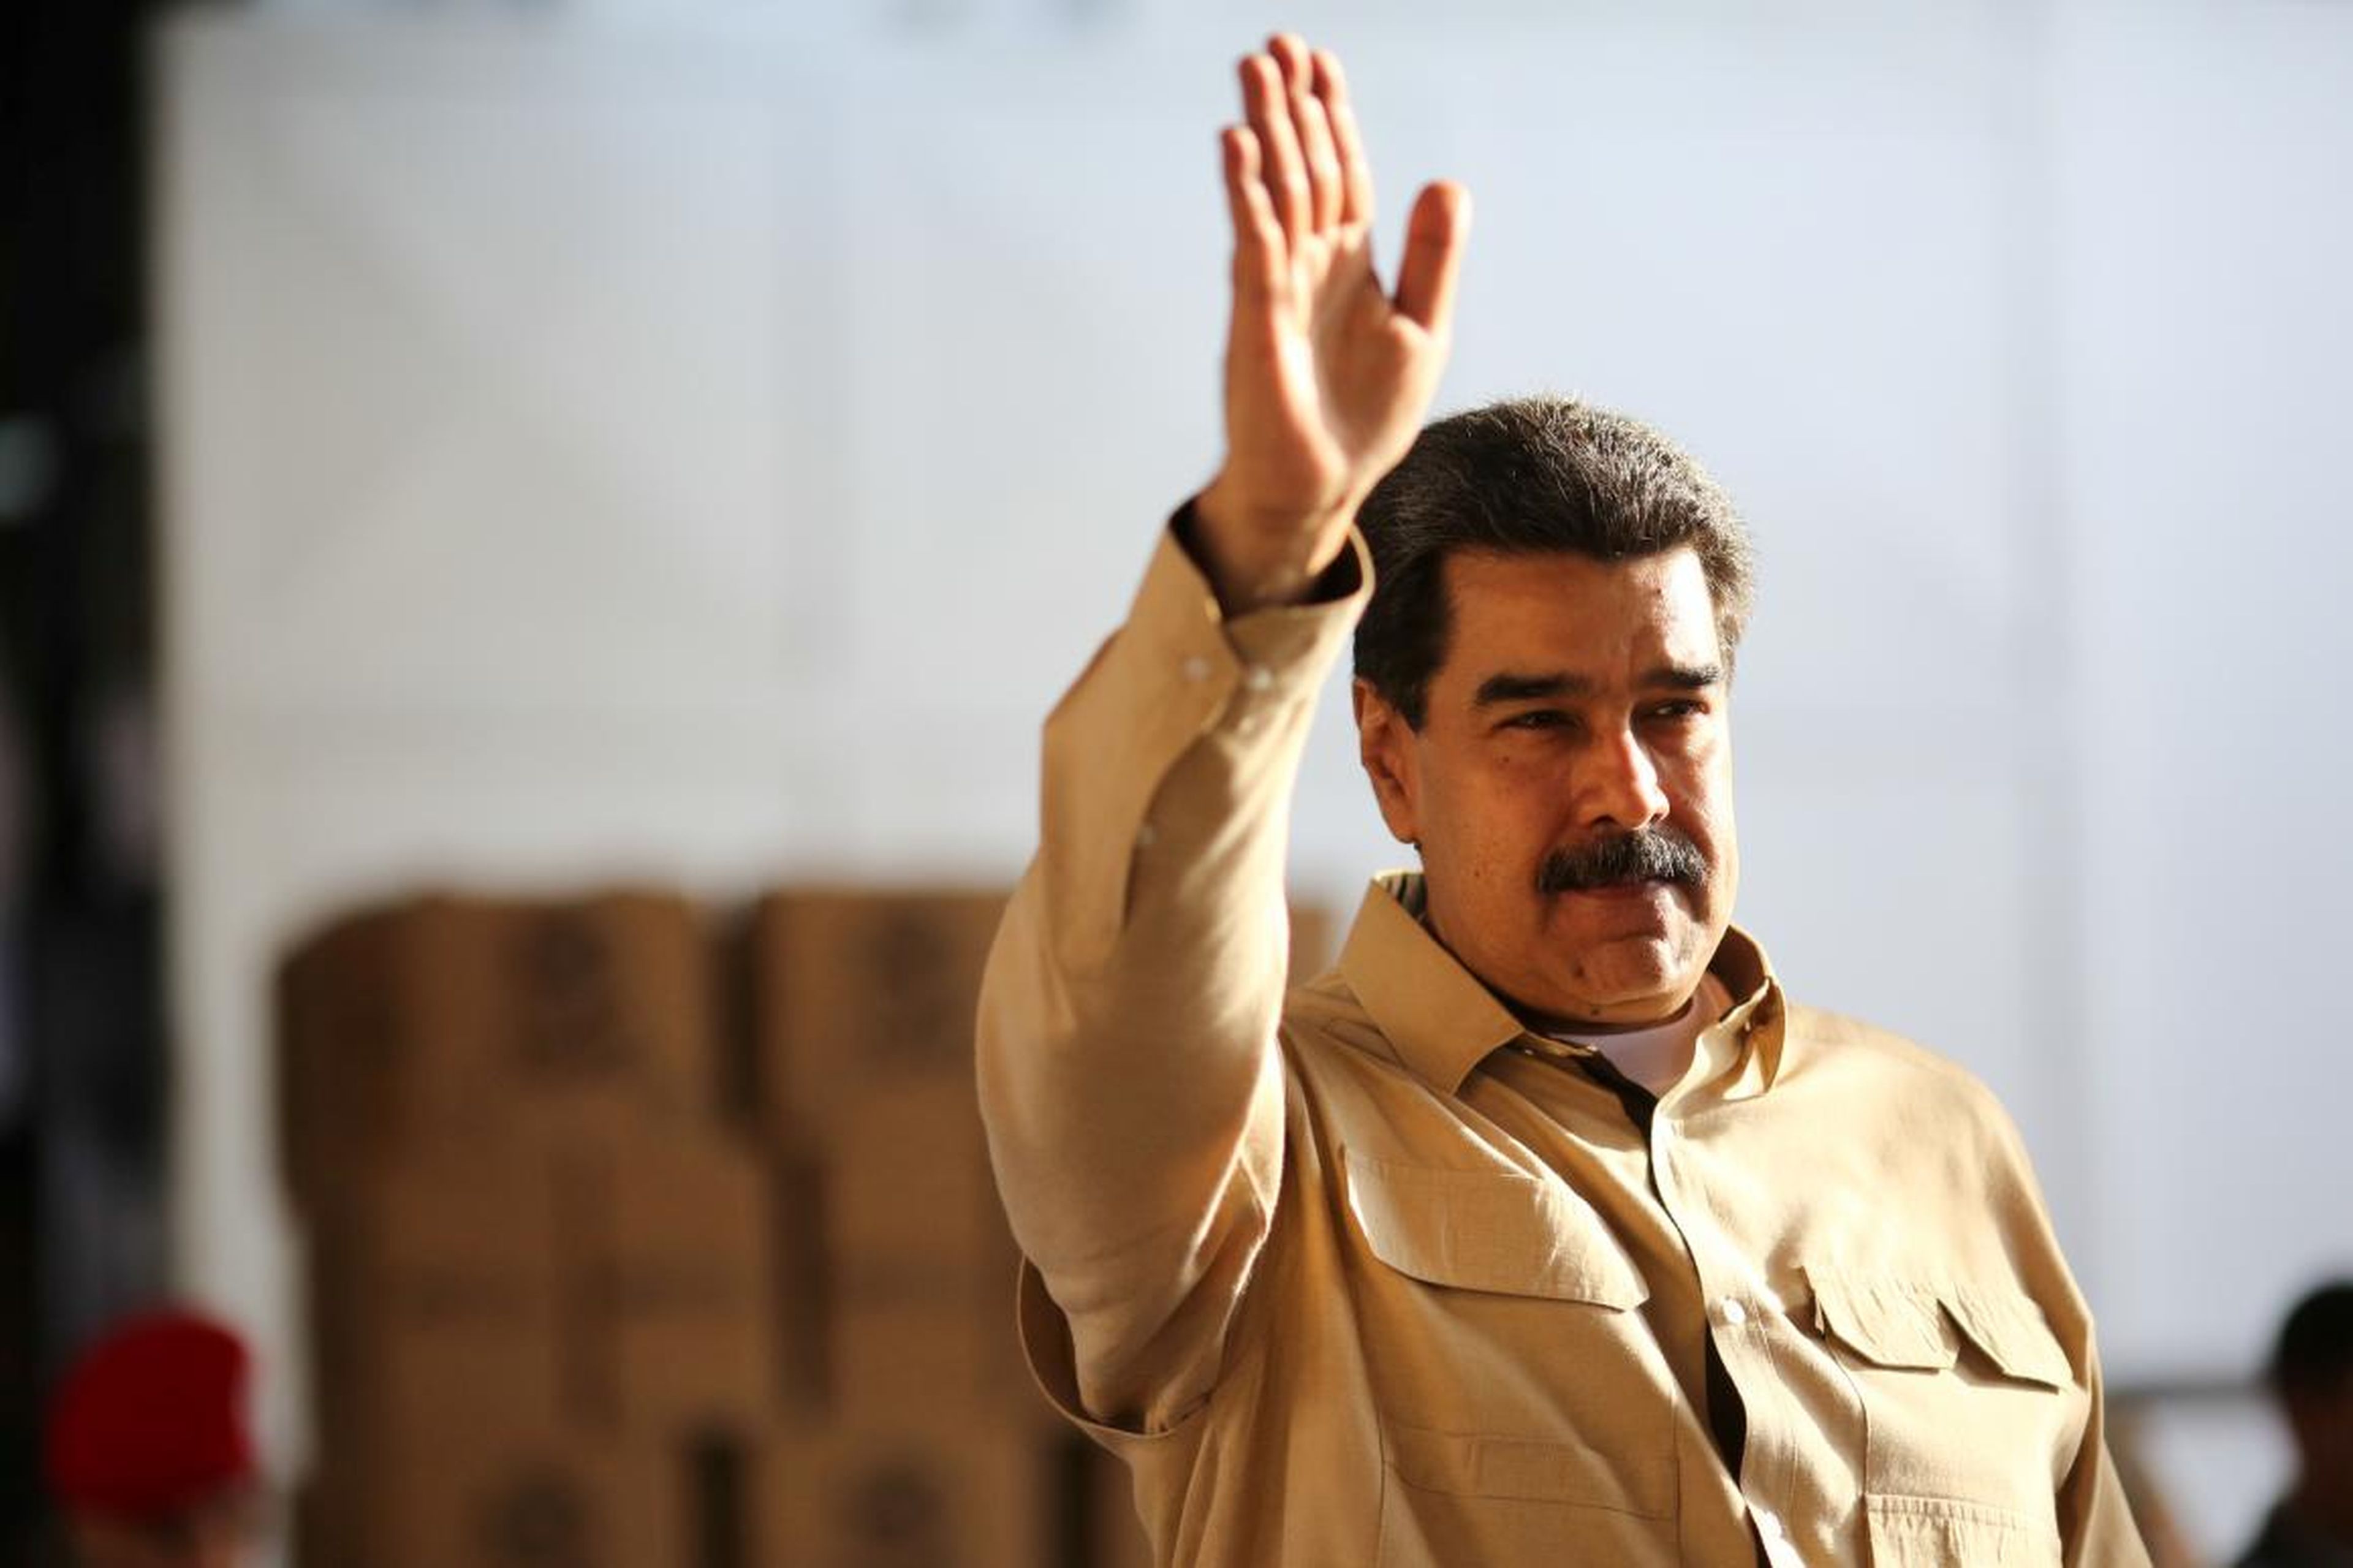 El presidente venezolano Nicolás Maduro saluda durante una visita a un centro de paquetería de alimentos en Caracas.